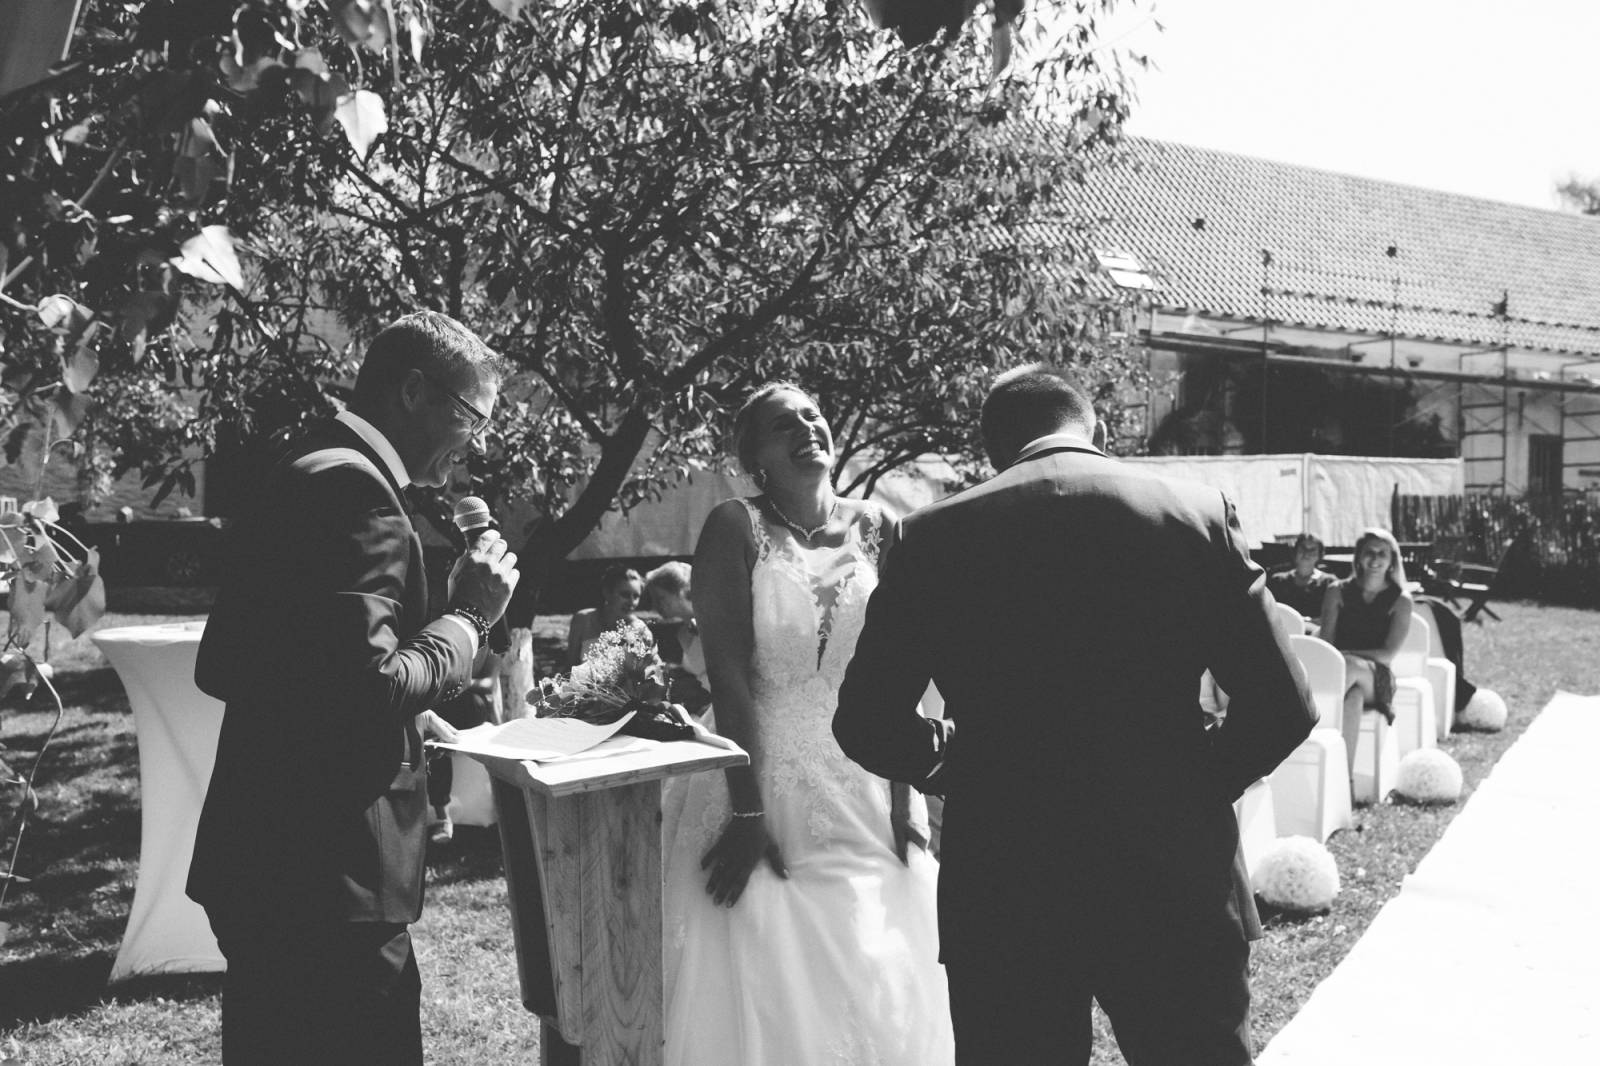 Wedding Events - 030921-Jessica-Axel-Cérémonie-175 - House of Weddings